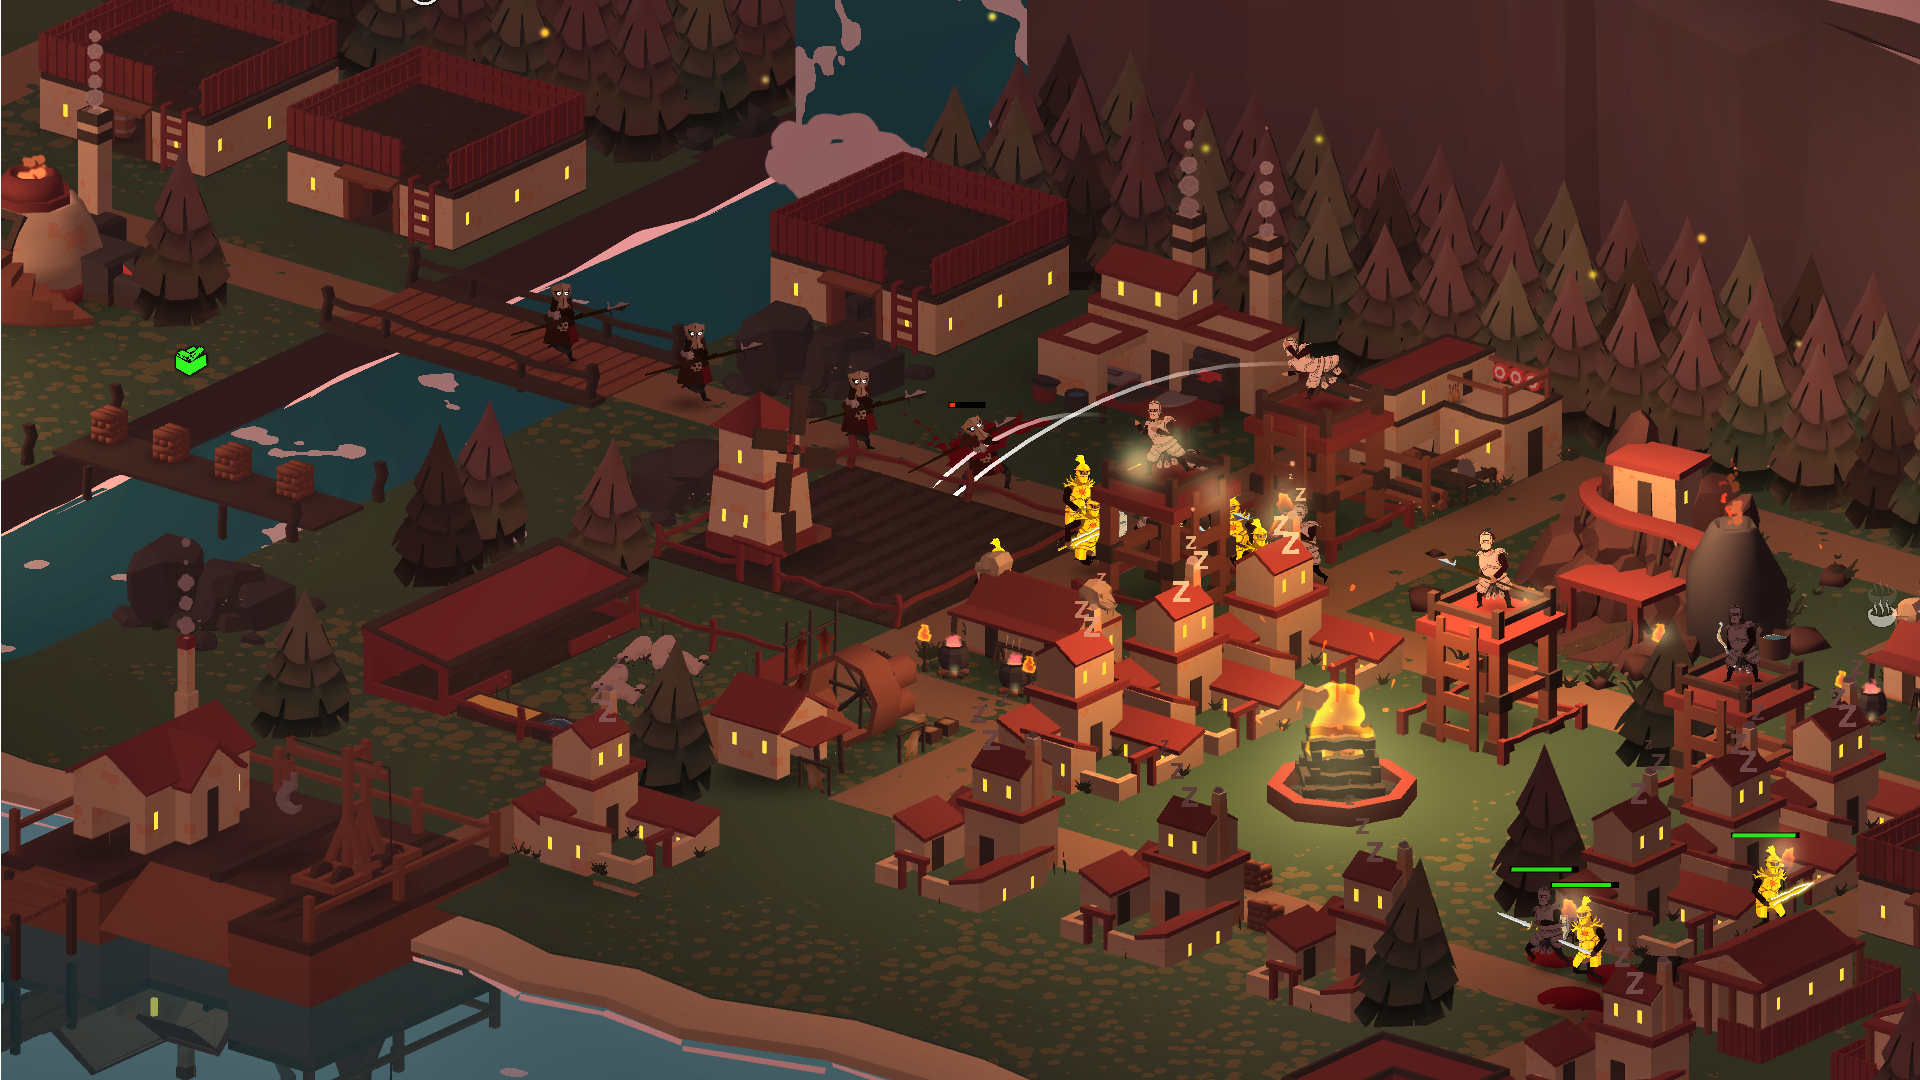 Screenshot of The Bonfire 2 Uncharted Shores